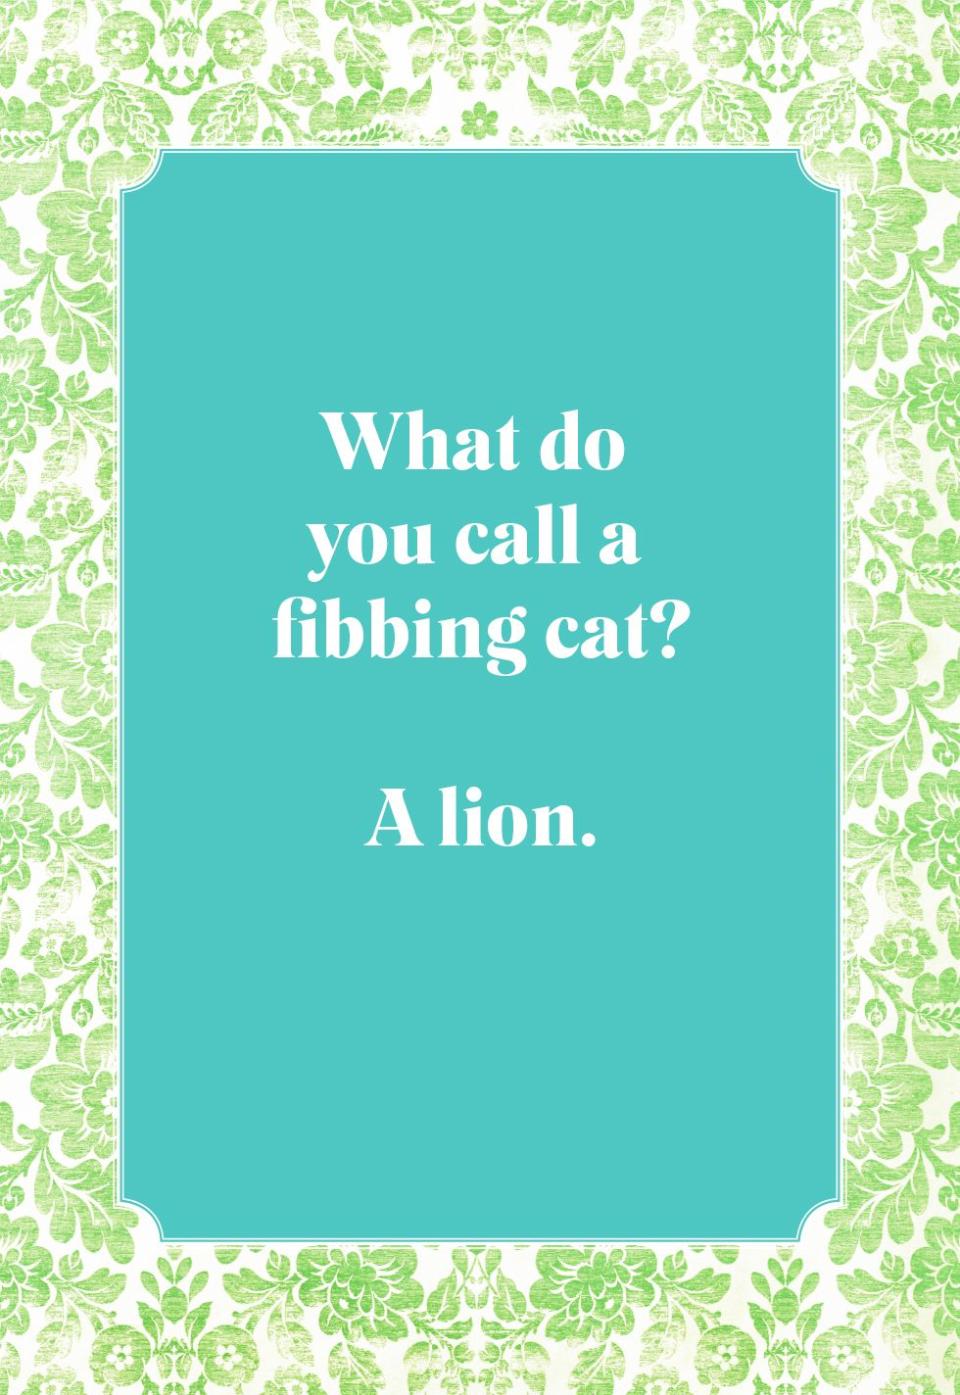 What do you call a fibbing cat?